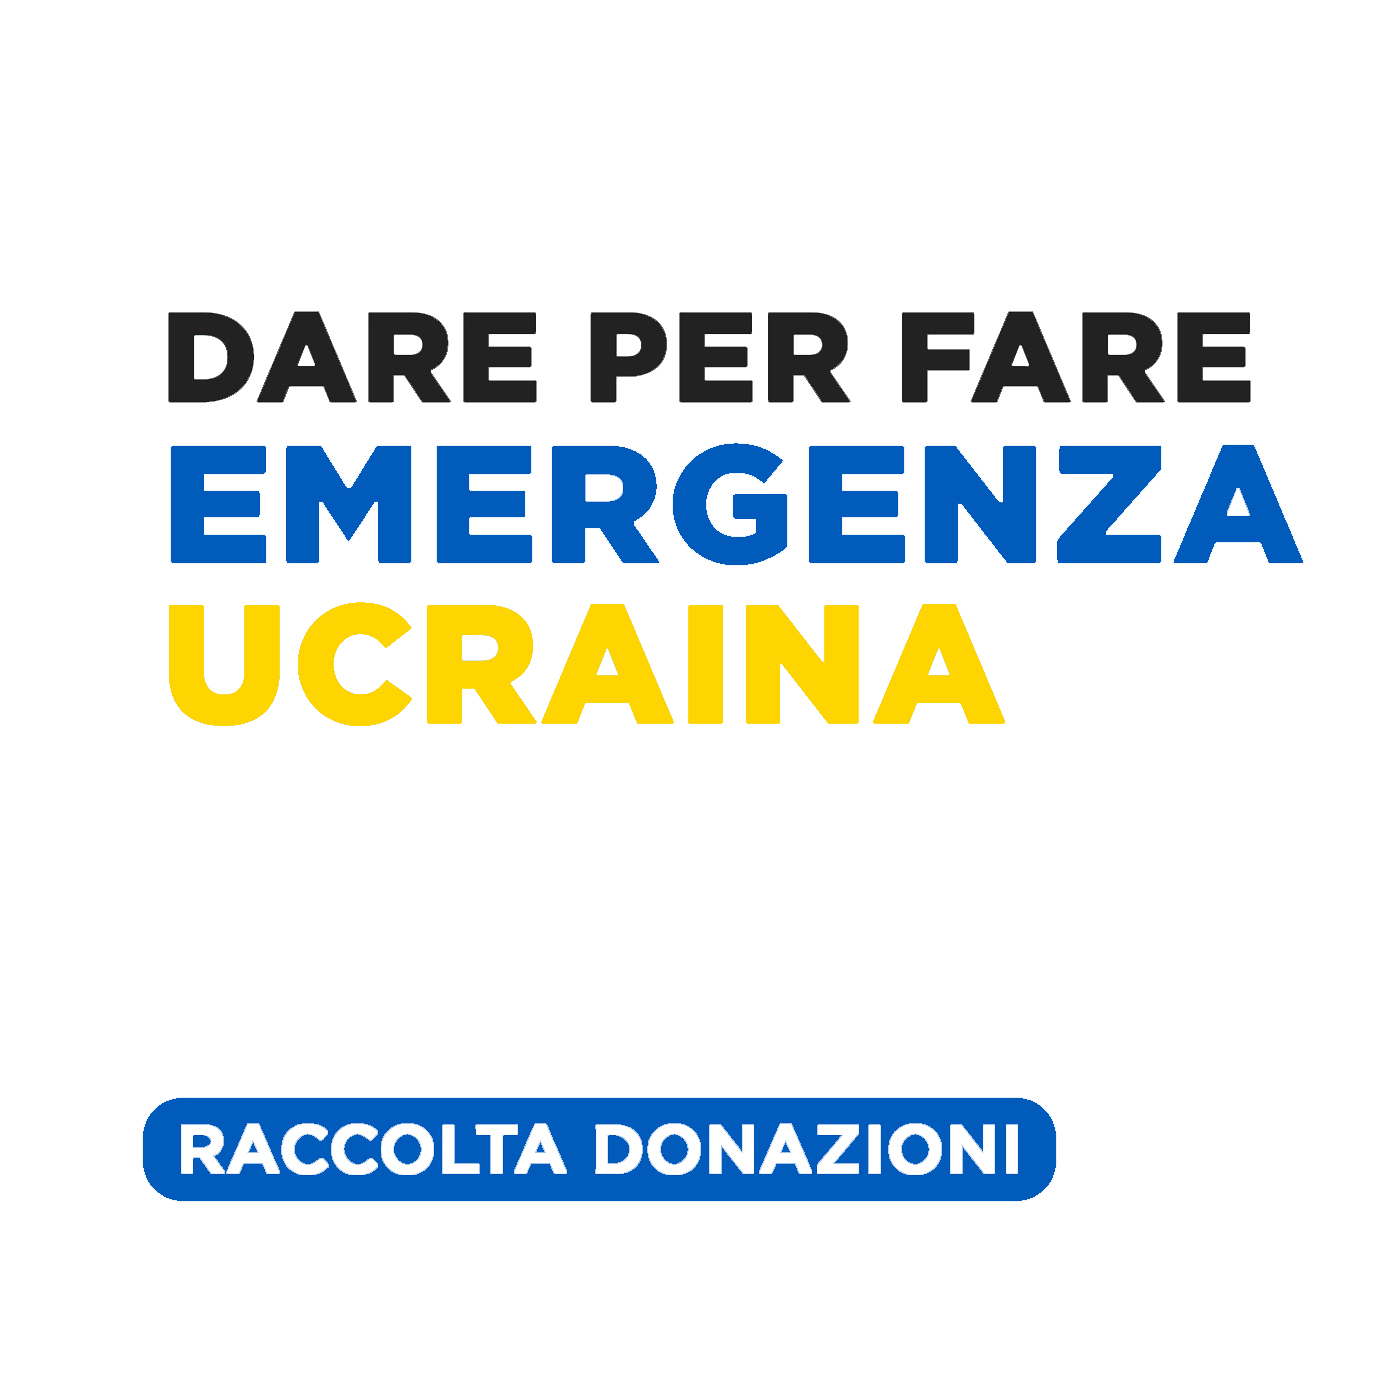 Emergenza Ucraina, il Fondo sociale di comunità Dare per Fare raccoglie donazioni per sostenere le persone in fuga dalla guerra e accolte nel territorio bolognese